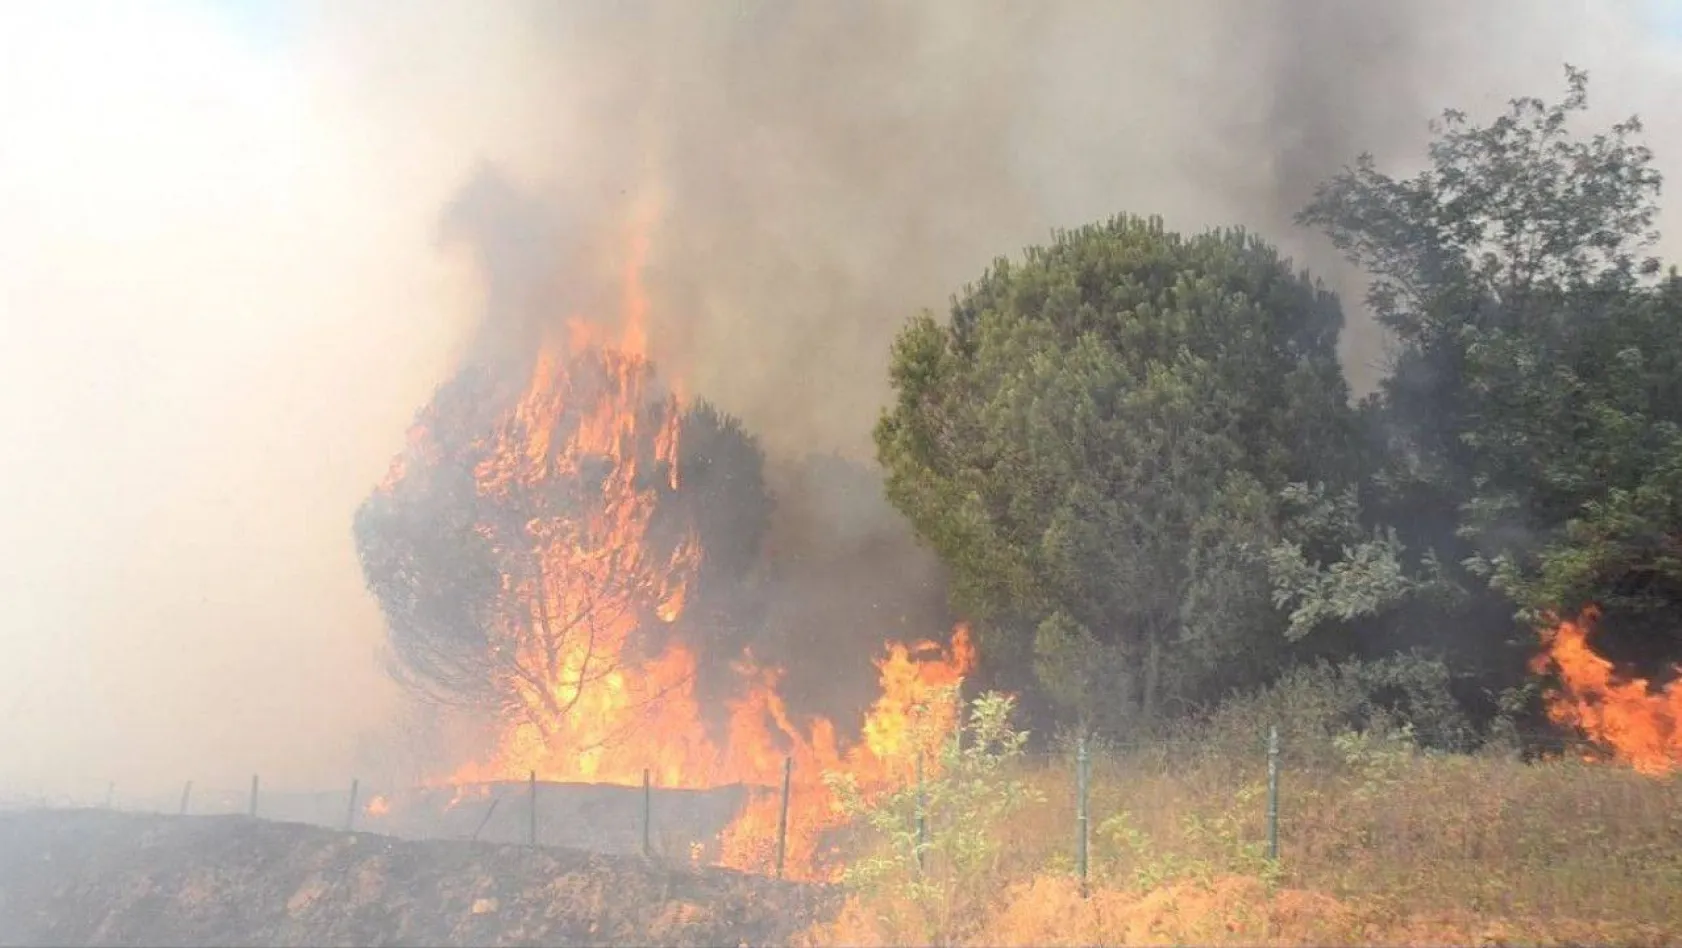 Çorlu'da ormanlık alan ve anız alev alev yandı